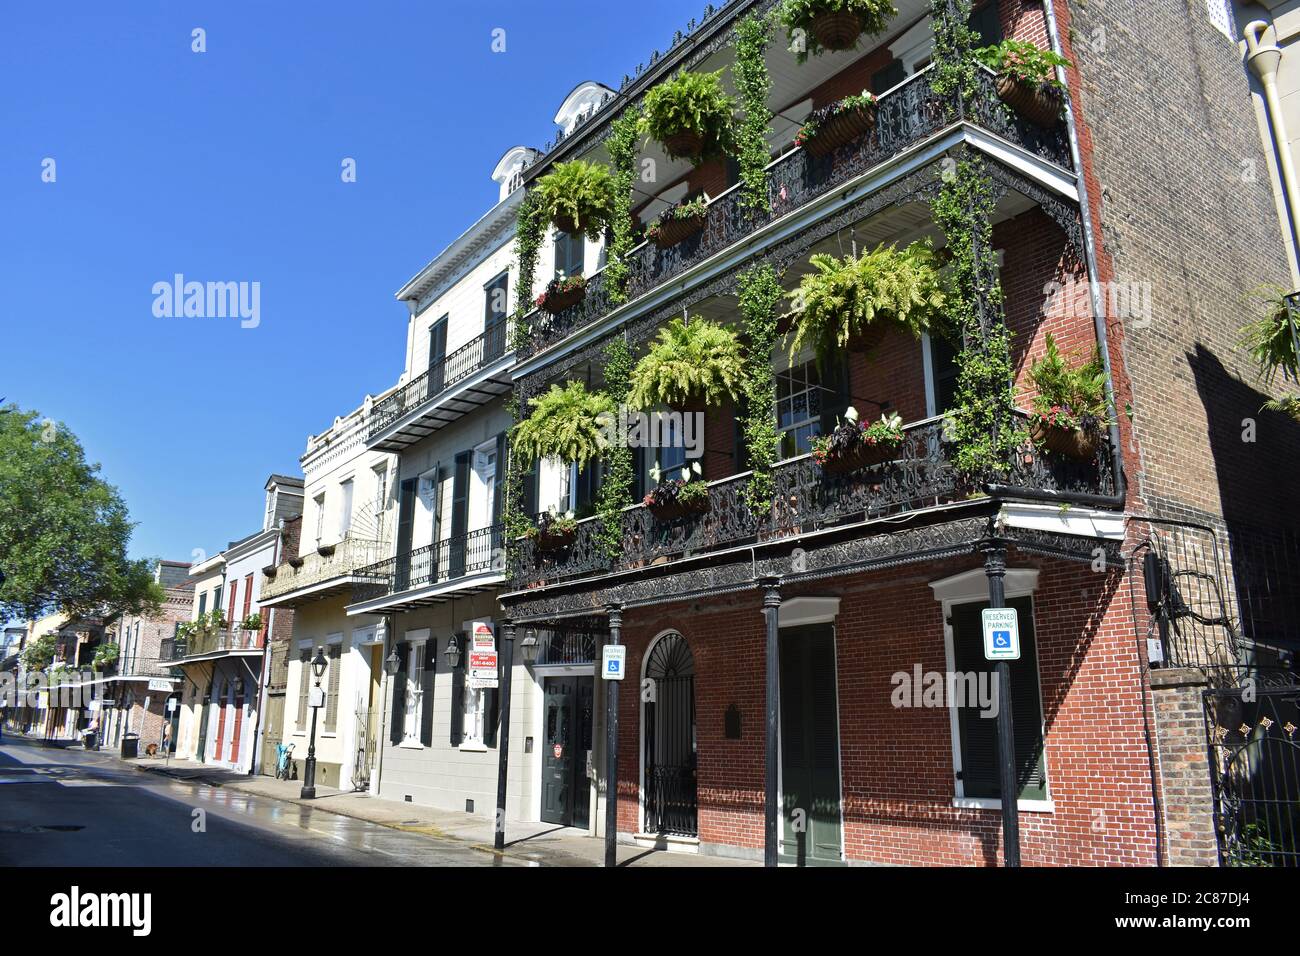 Galeries d'art élaborées couvertes de plantes vertes luxuriantes sur un bâtiment le long de Royal Street dans le quartier historique français de la Nouvelle-Orléans, Louisiane. Banque D'Images